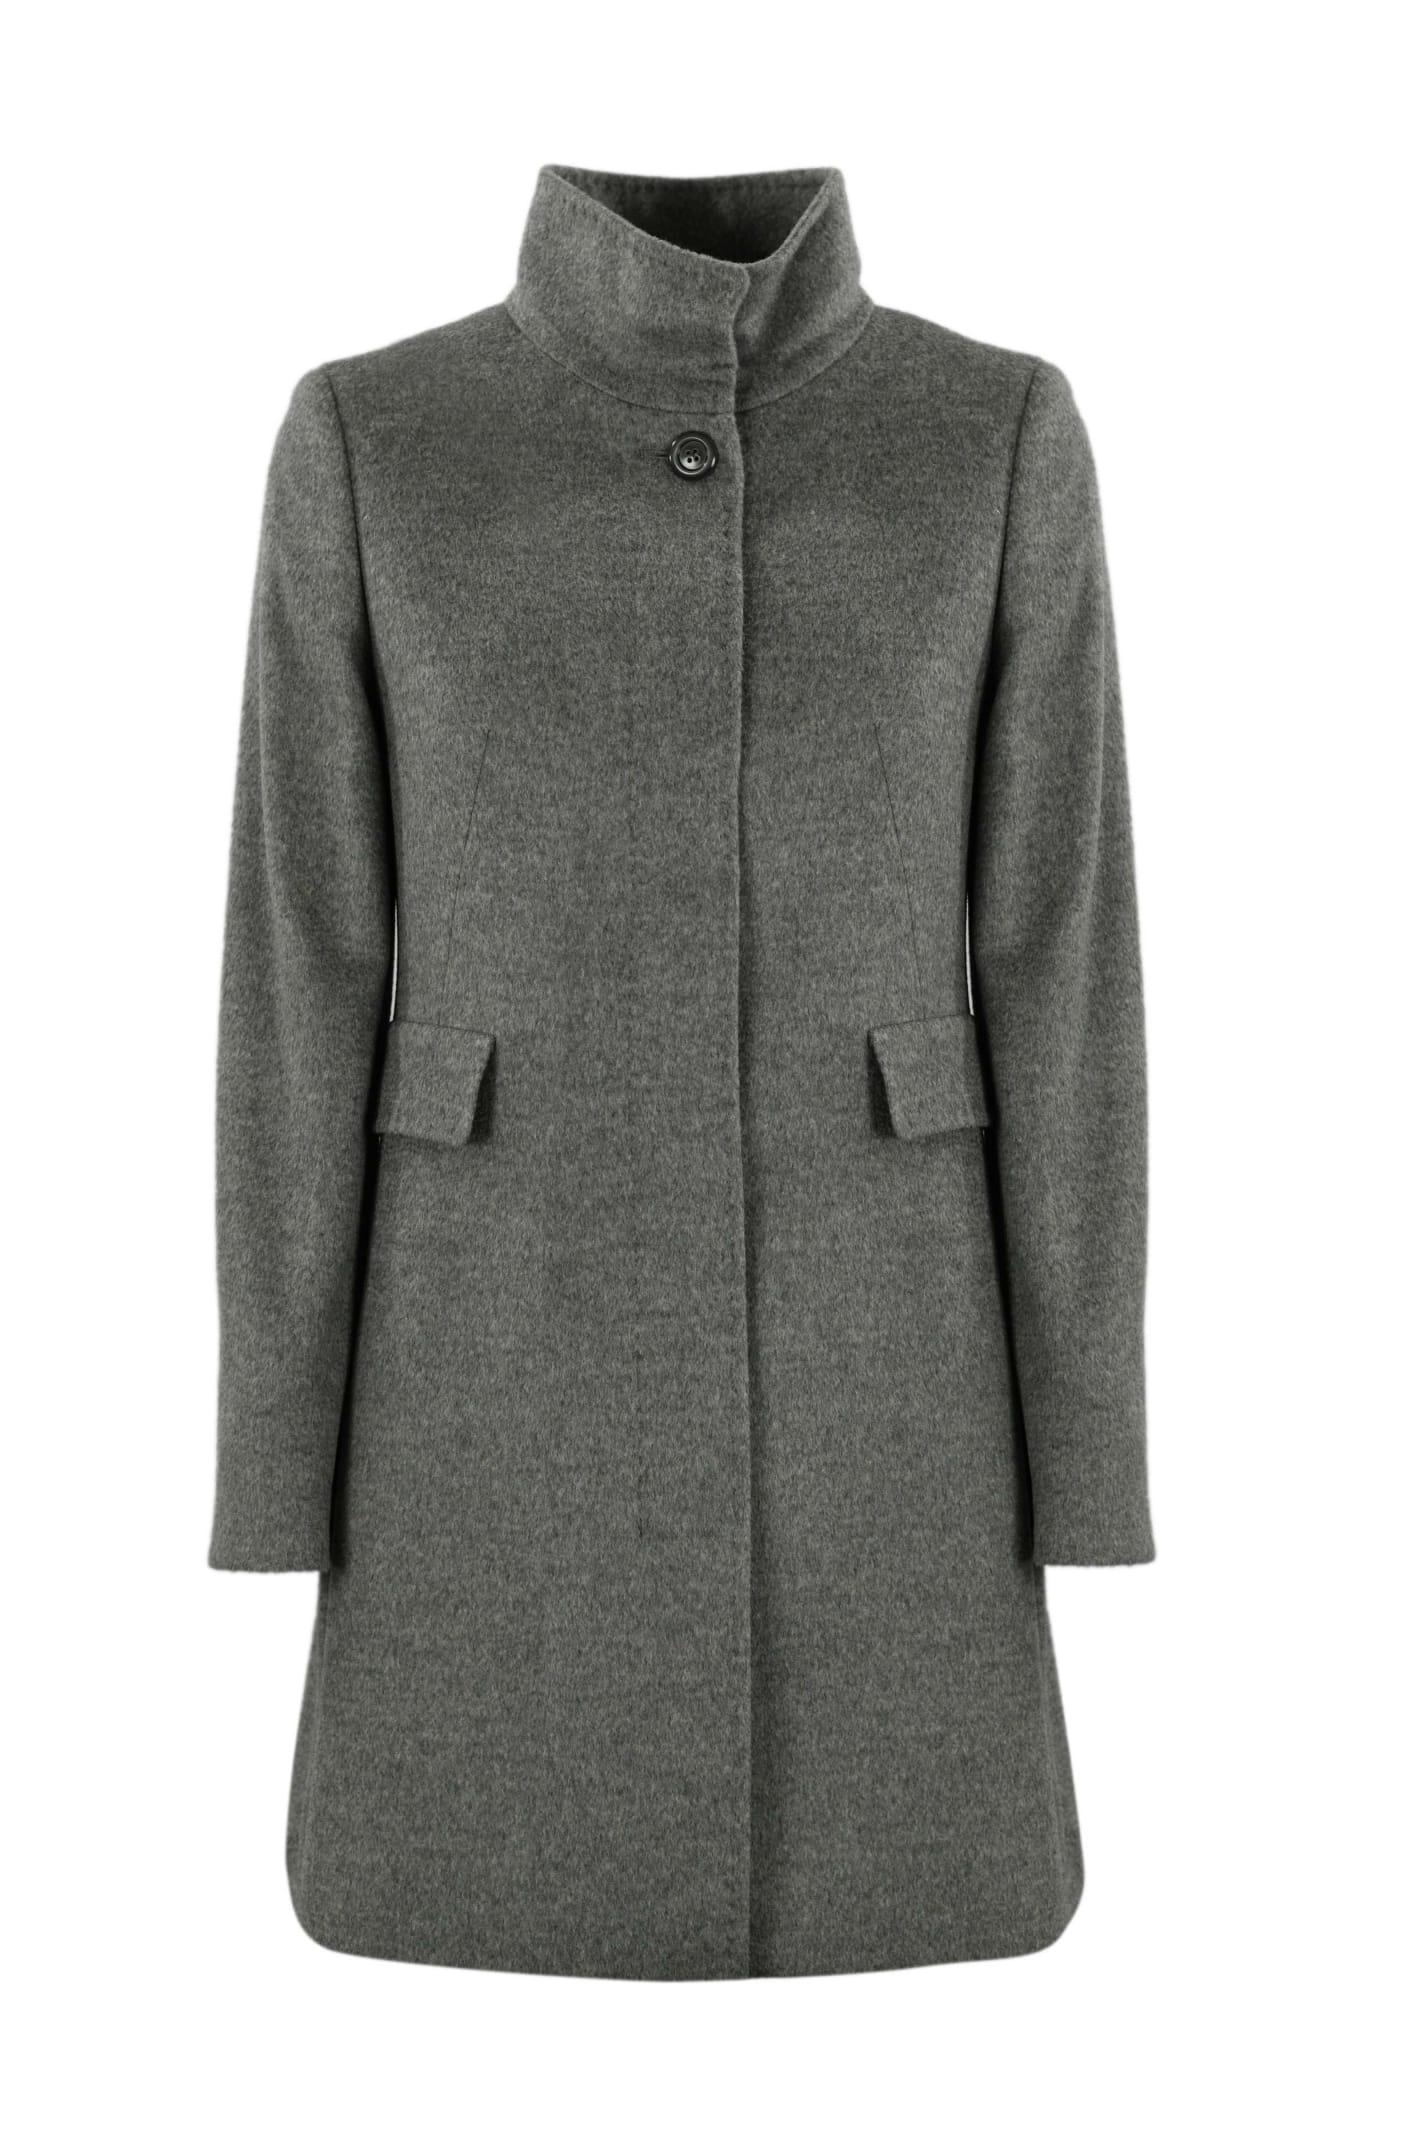 Max Mara Studio Agnese Wool Coat in Gray | Lyst